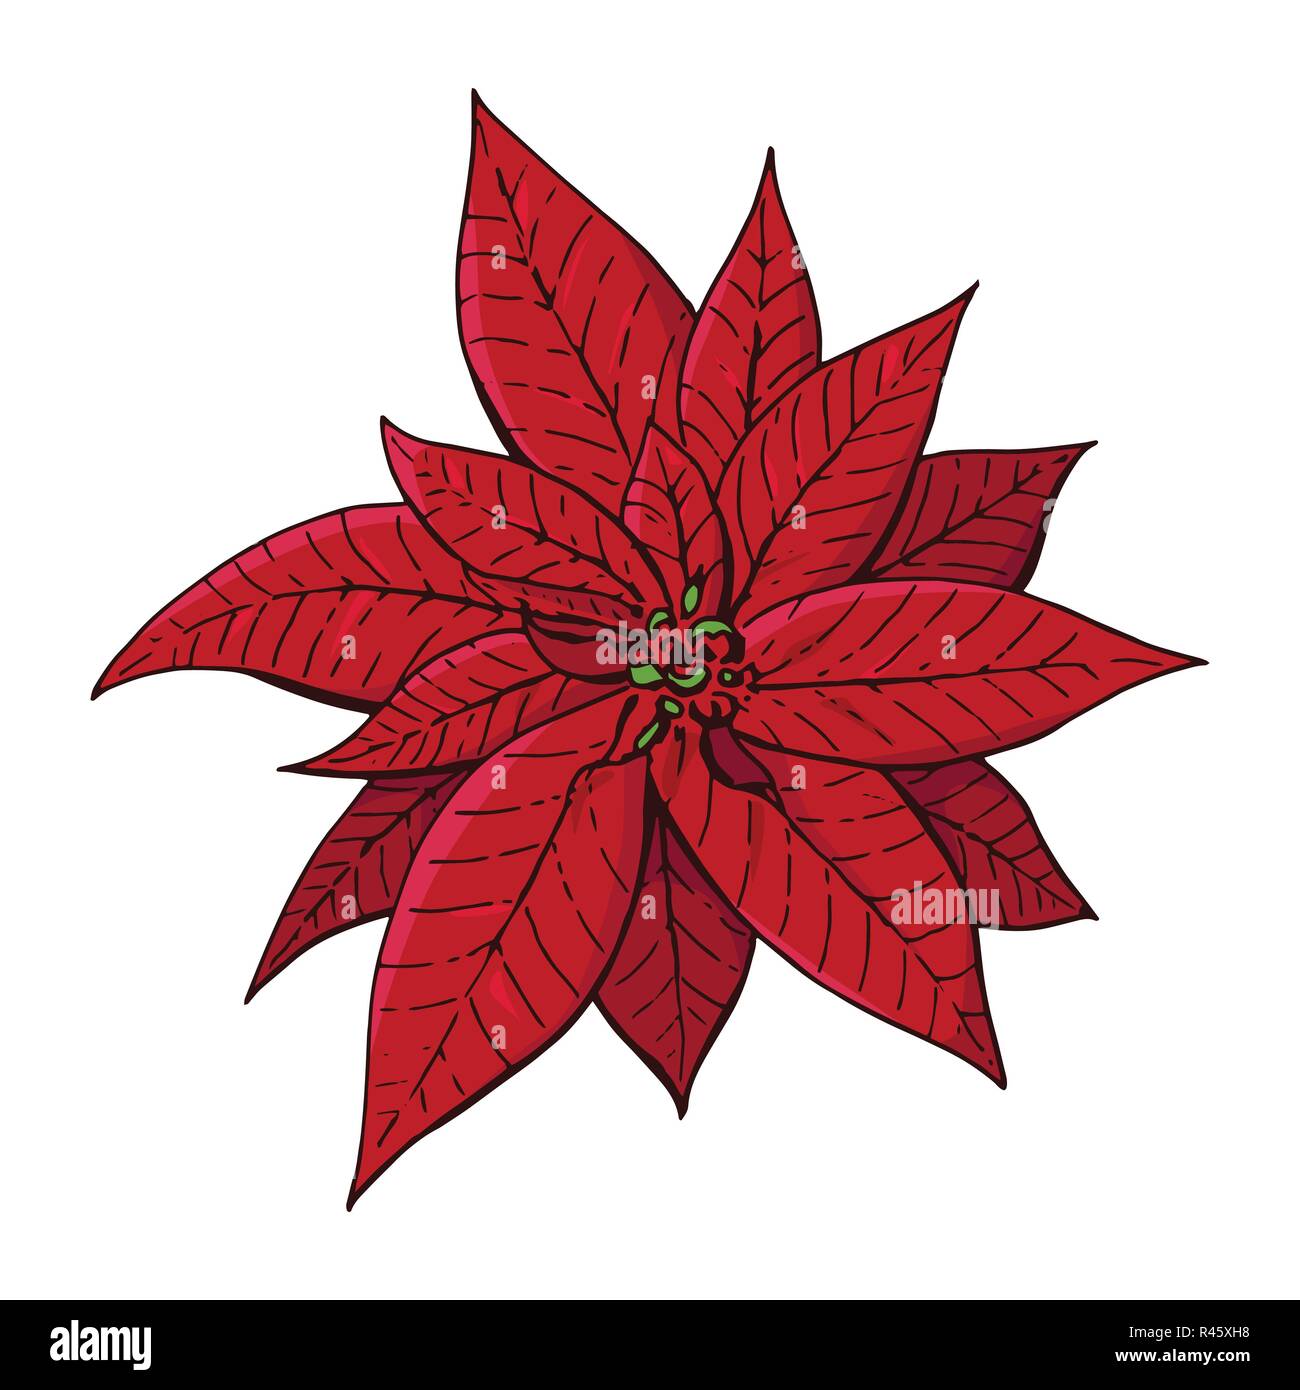 Simboli Natale.Rosso Natale Poinsettia Simboli Di Natale Illustrazione Elemento Di Design Per La Decorazione Di Natale Splendido Fiore Isolato Su Sfondo Bianco Immagine E Vettoriale Alamy